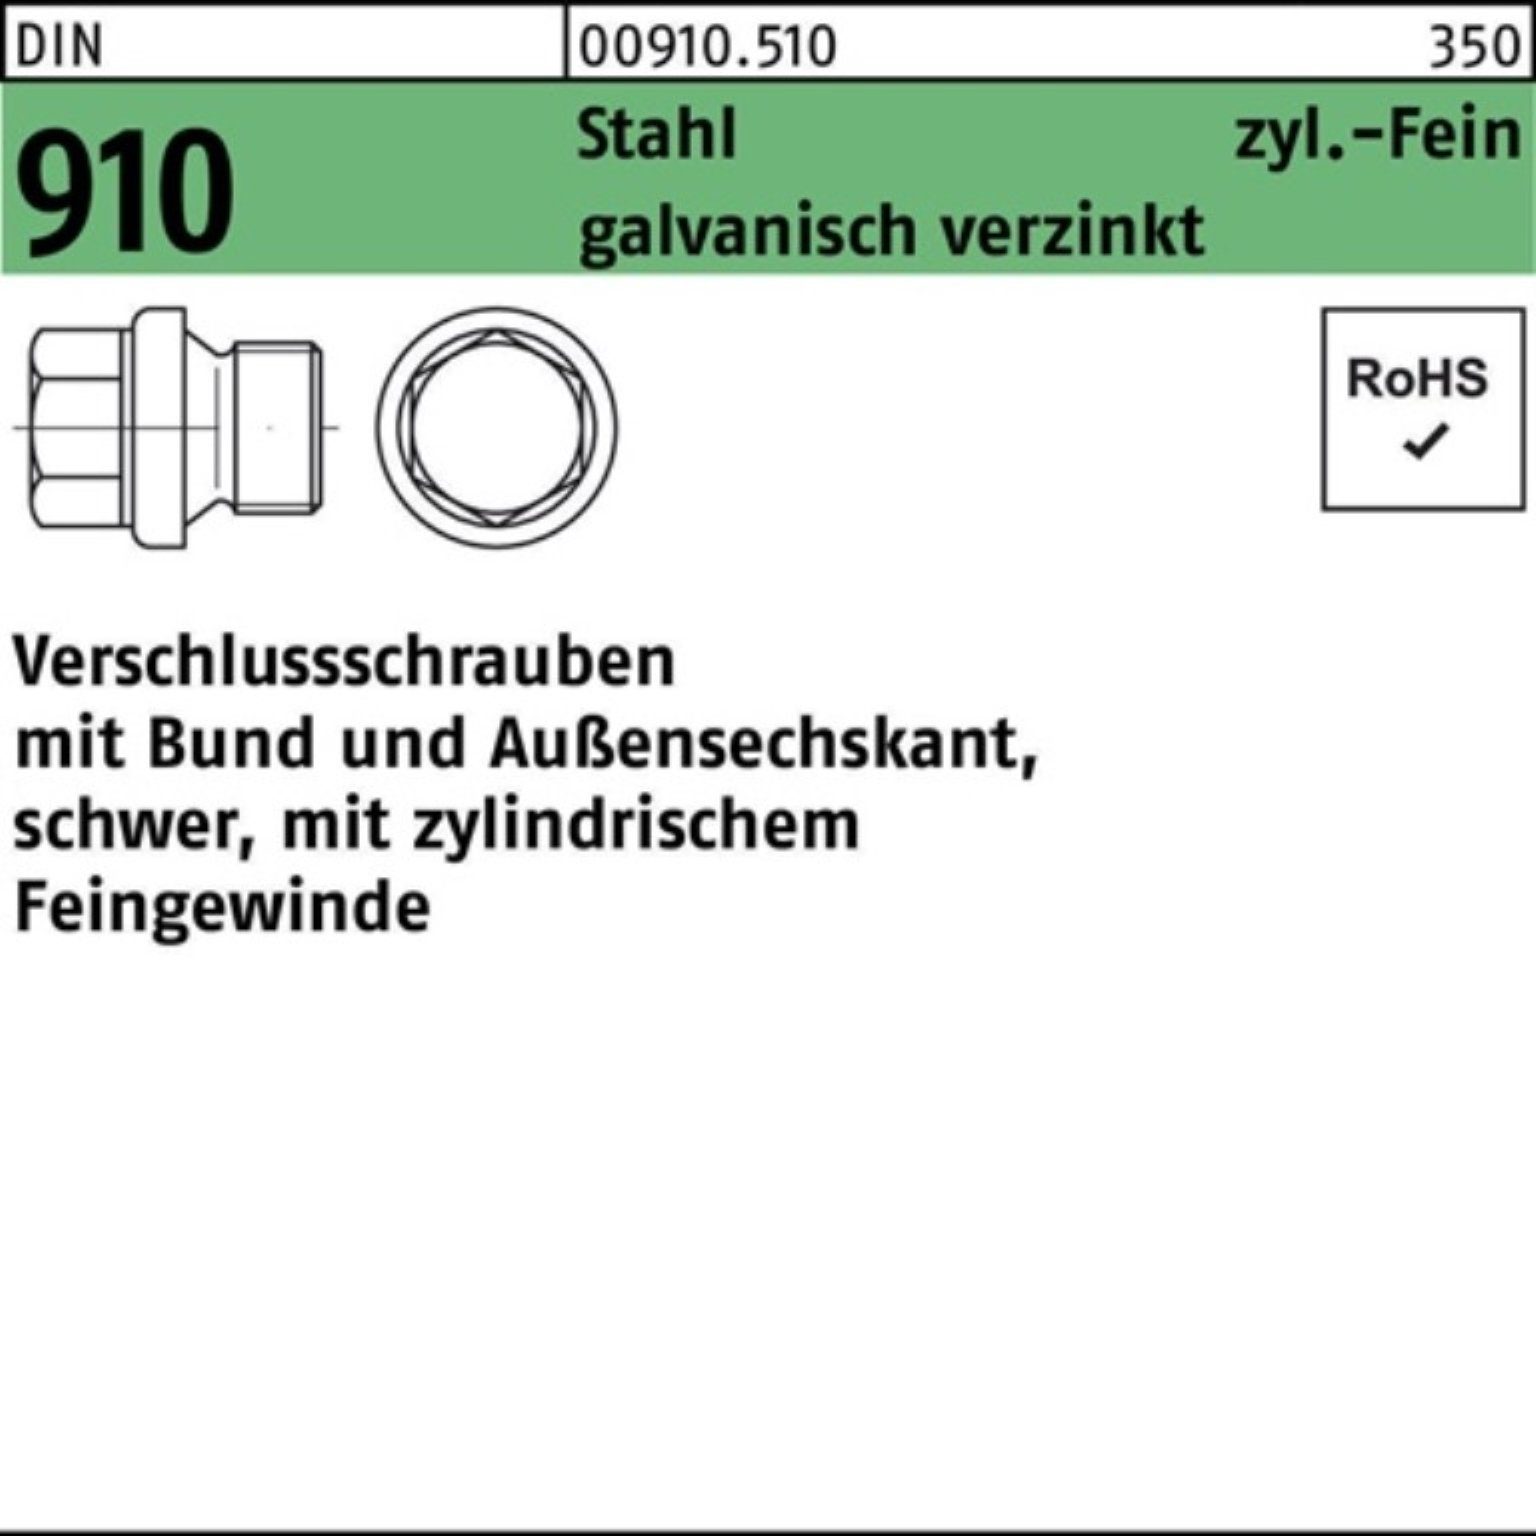 Bund/Außen-6-kt M27x2 Schraube Reyher Verschlußschraube Stahl gal 910 DIN 100er Pack